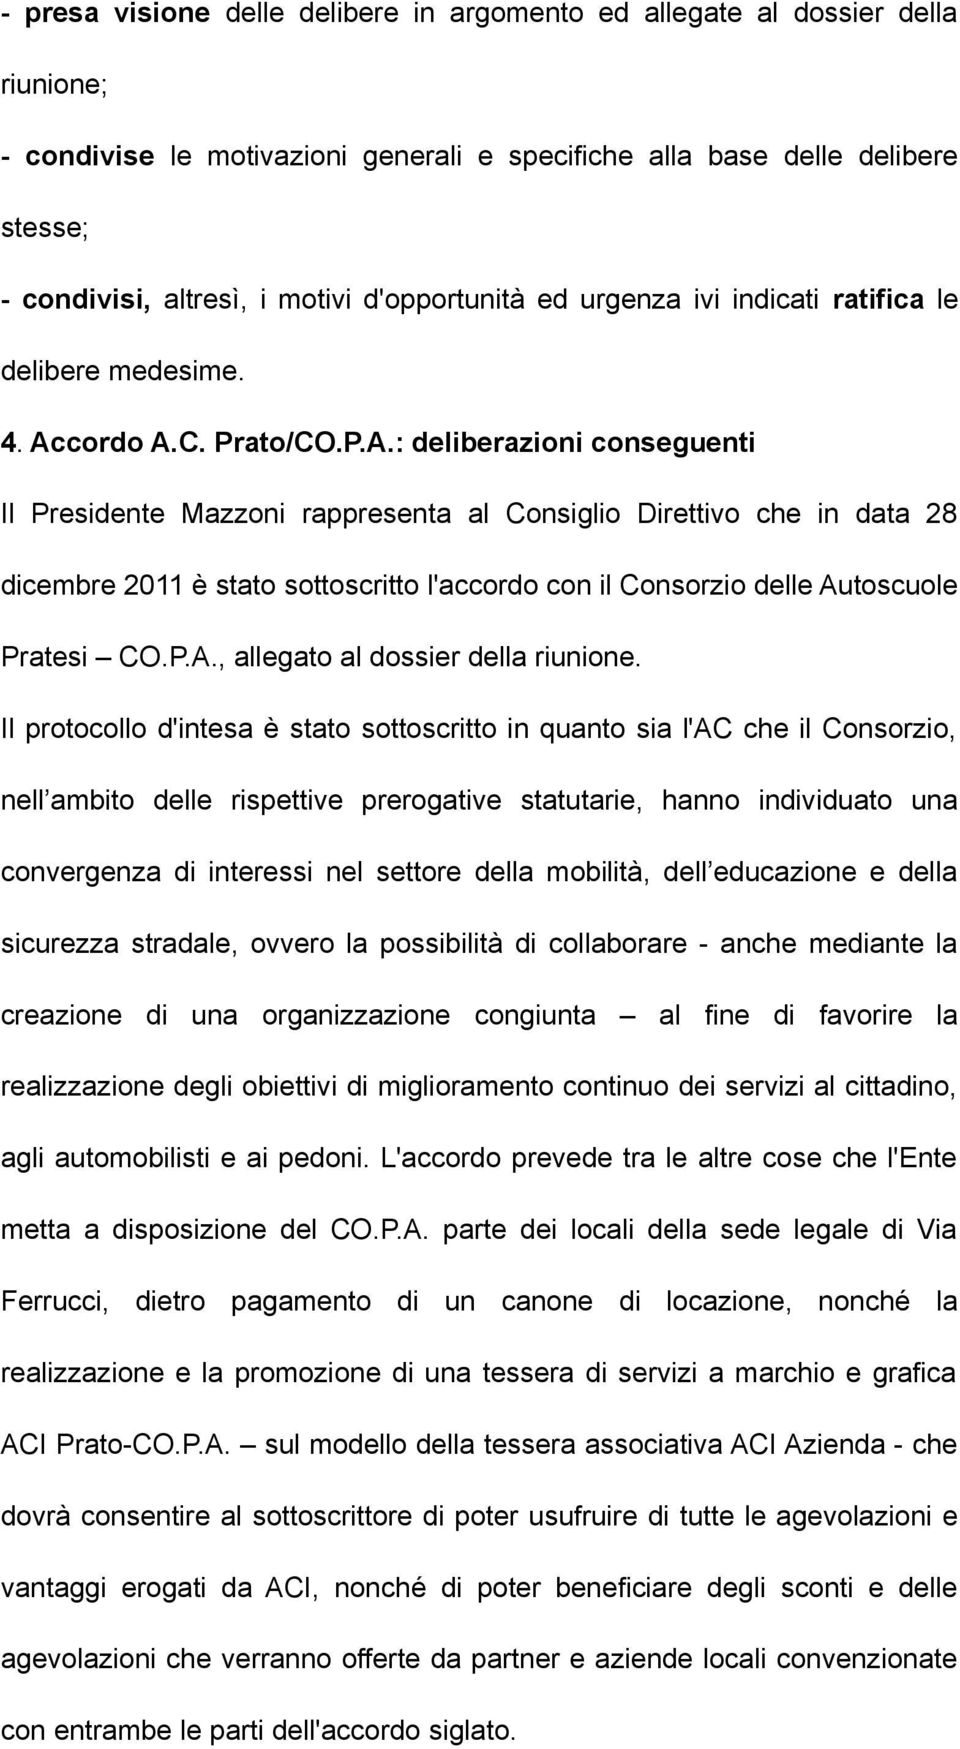 cordo A.C. Prato/CO.P.A.: deliberazioni conseguenti Il Presidente Mazzoni rappresenta al Consiglio Direttivo che in data 28 dicembre 2011 è stato sottoscritto l'accordo con il Consorzio delle Autoscuole Pratesi CO.